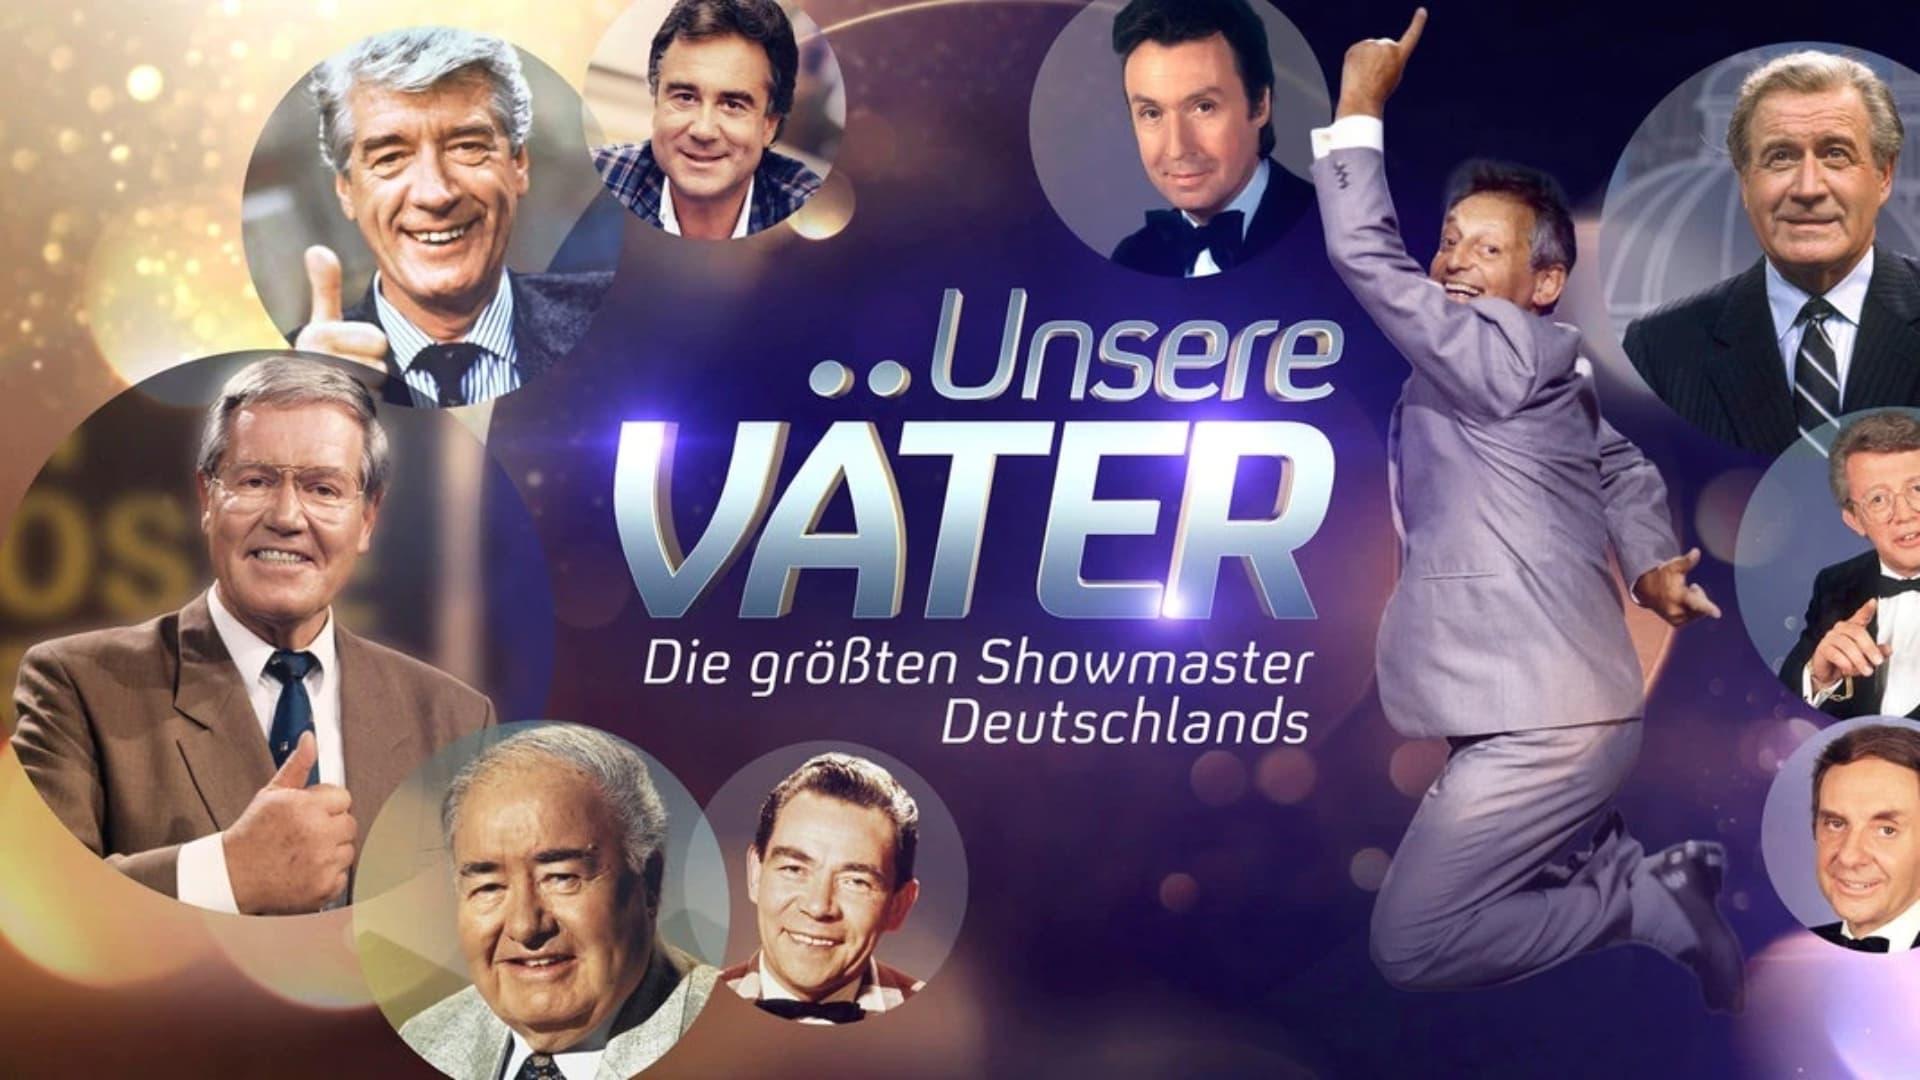 Unsere Väter – Die größten Showmaster Deutschlands backdrop